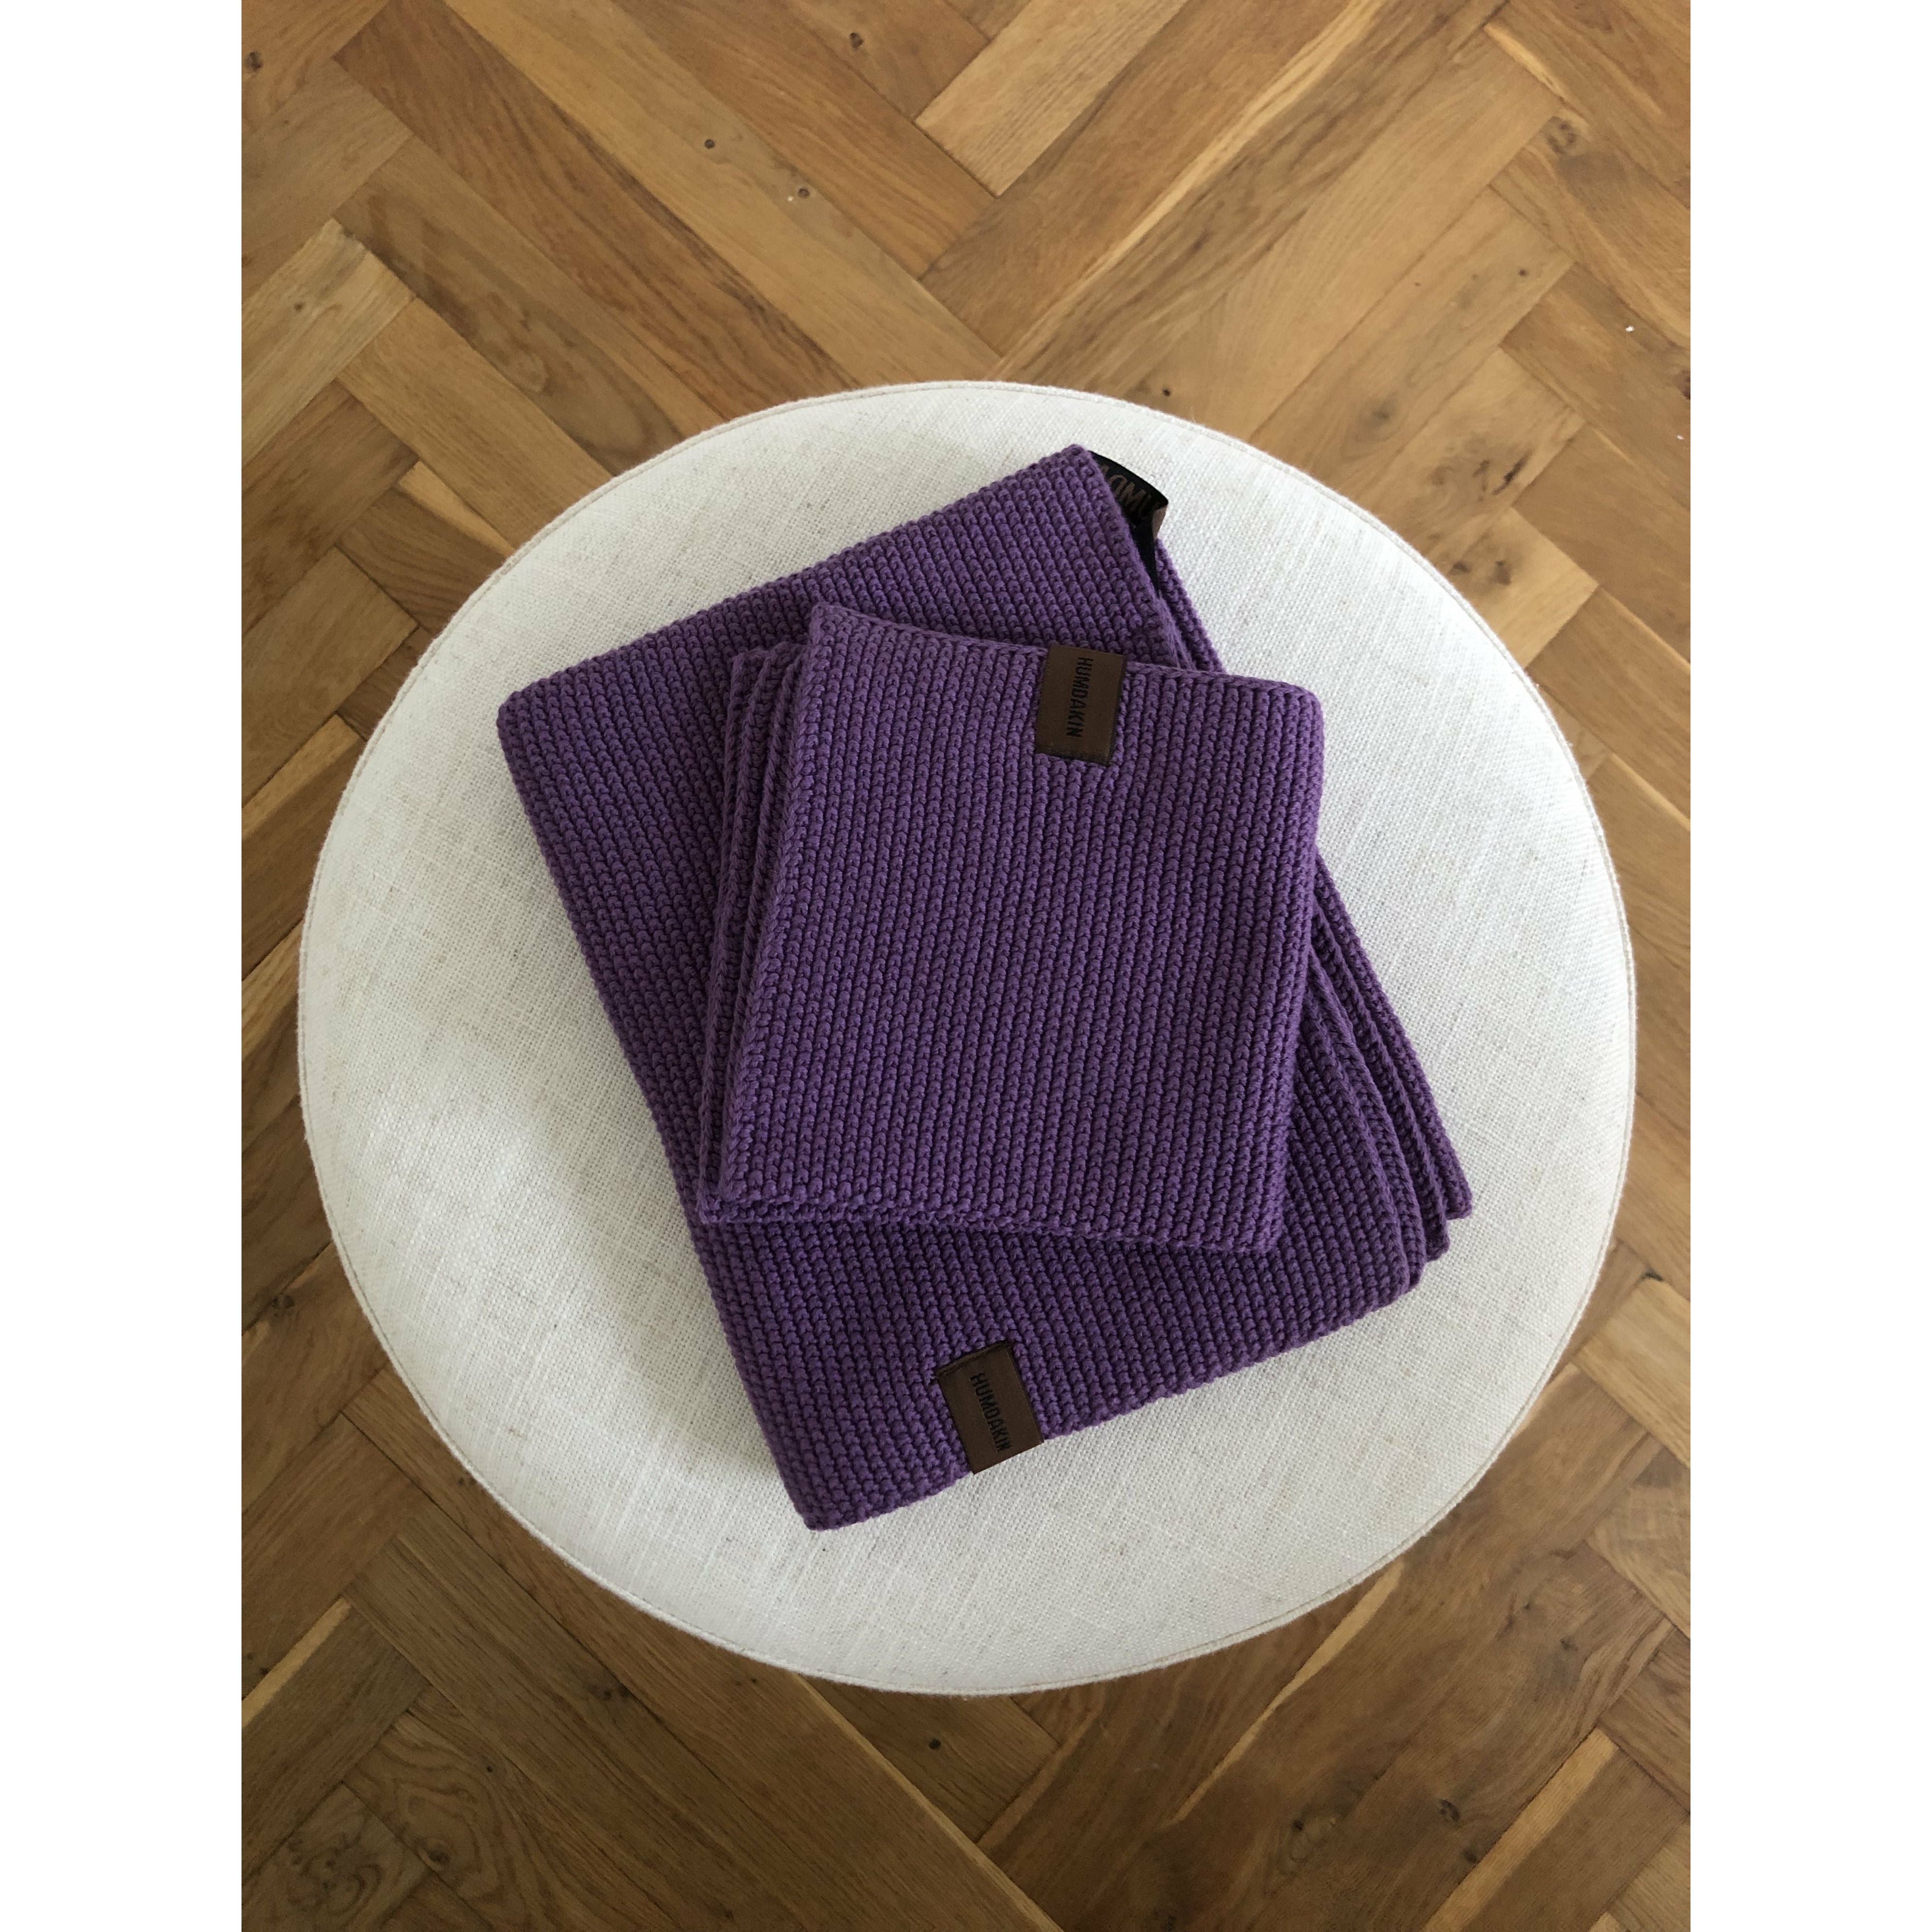 Humdakin pletený organický kuchyňský ručník, fialová